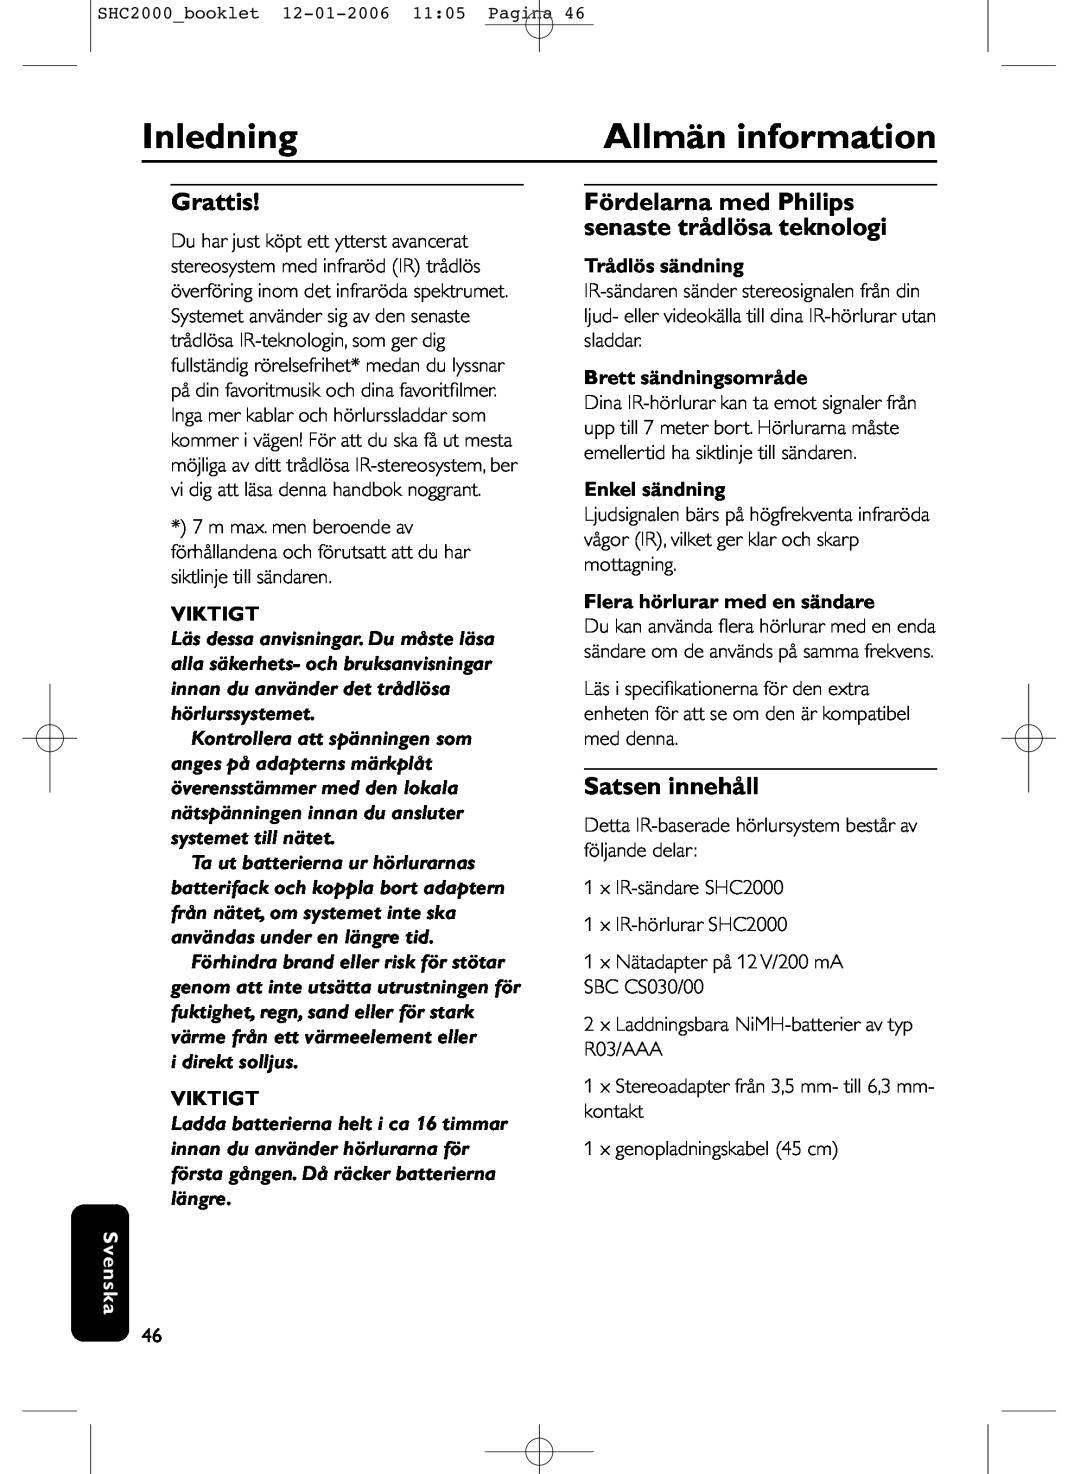 Philips SHC2000 manual Inledning, Allmän information, Grattis, Satsen innehåll, Viktigt, Svenska, Trådlös sändning 